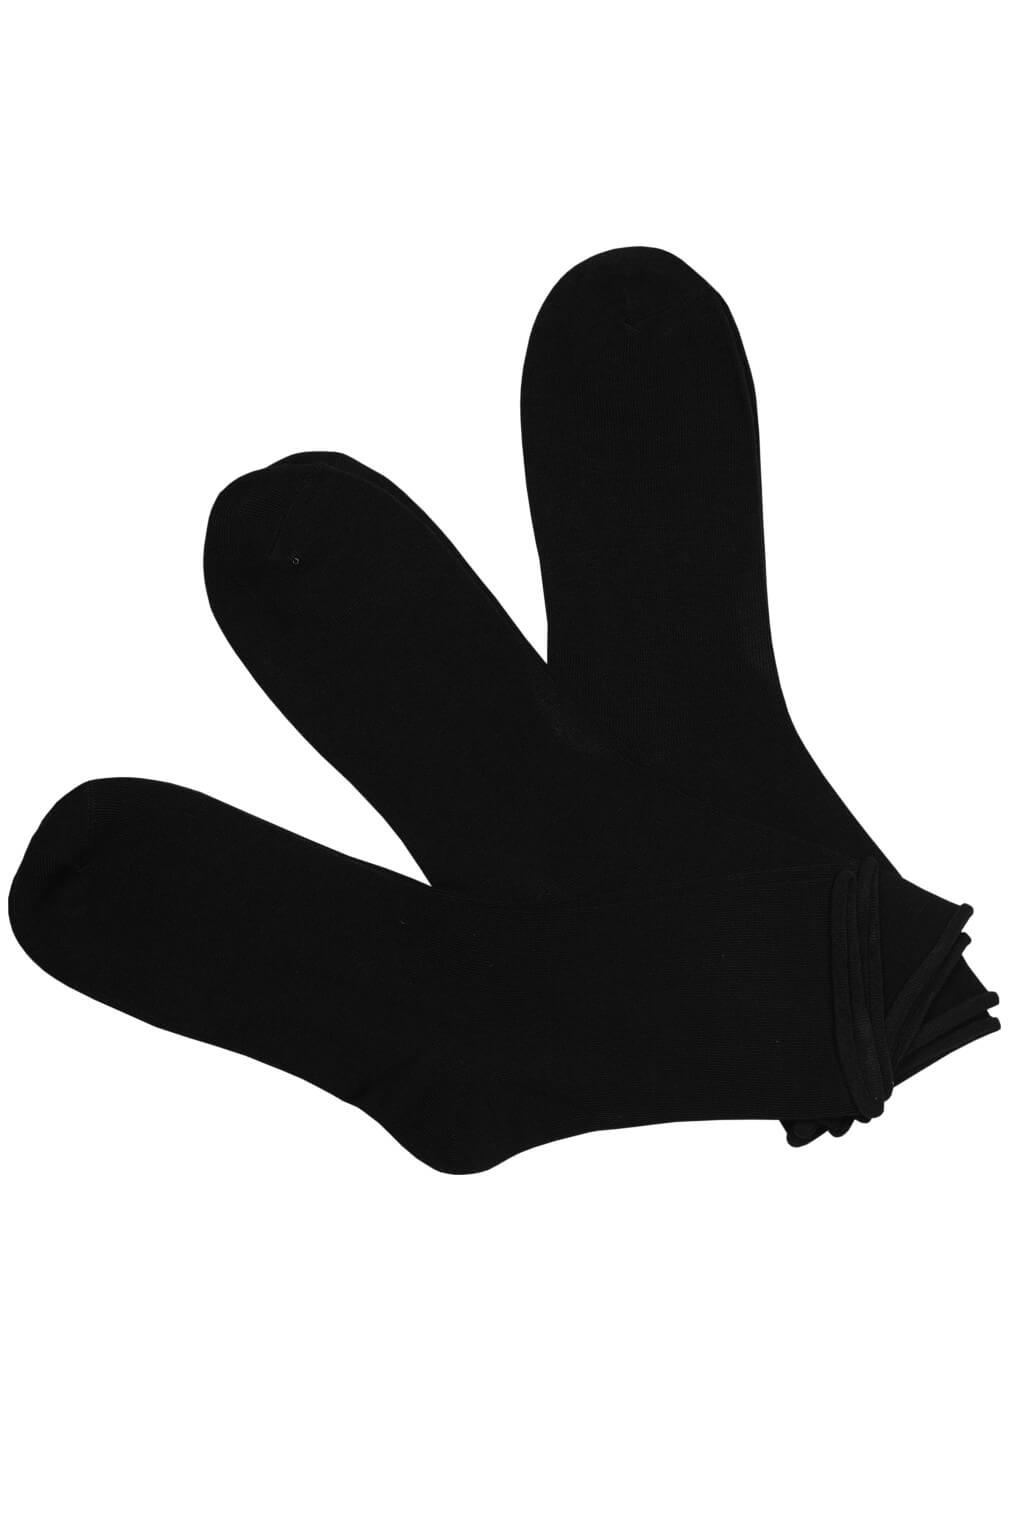 Dámské zdravotní ponožky bavlna LW3010C - 3bal 38-42 černá